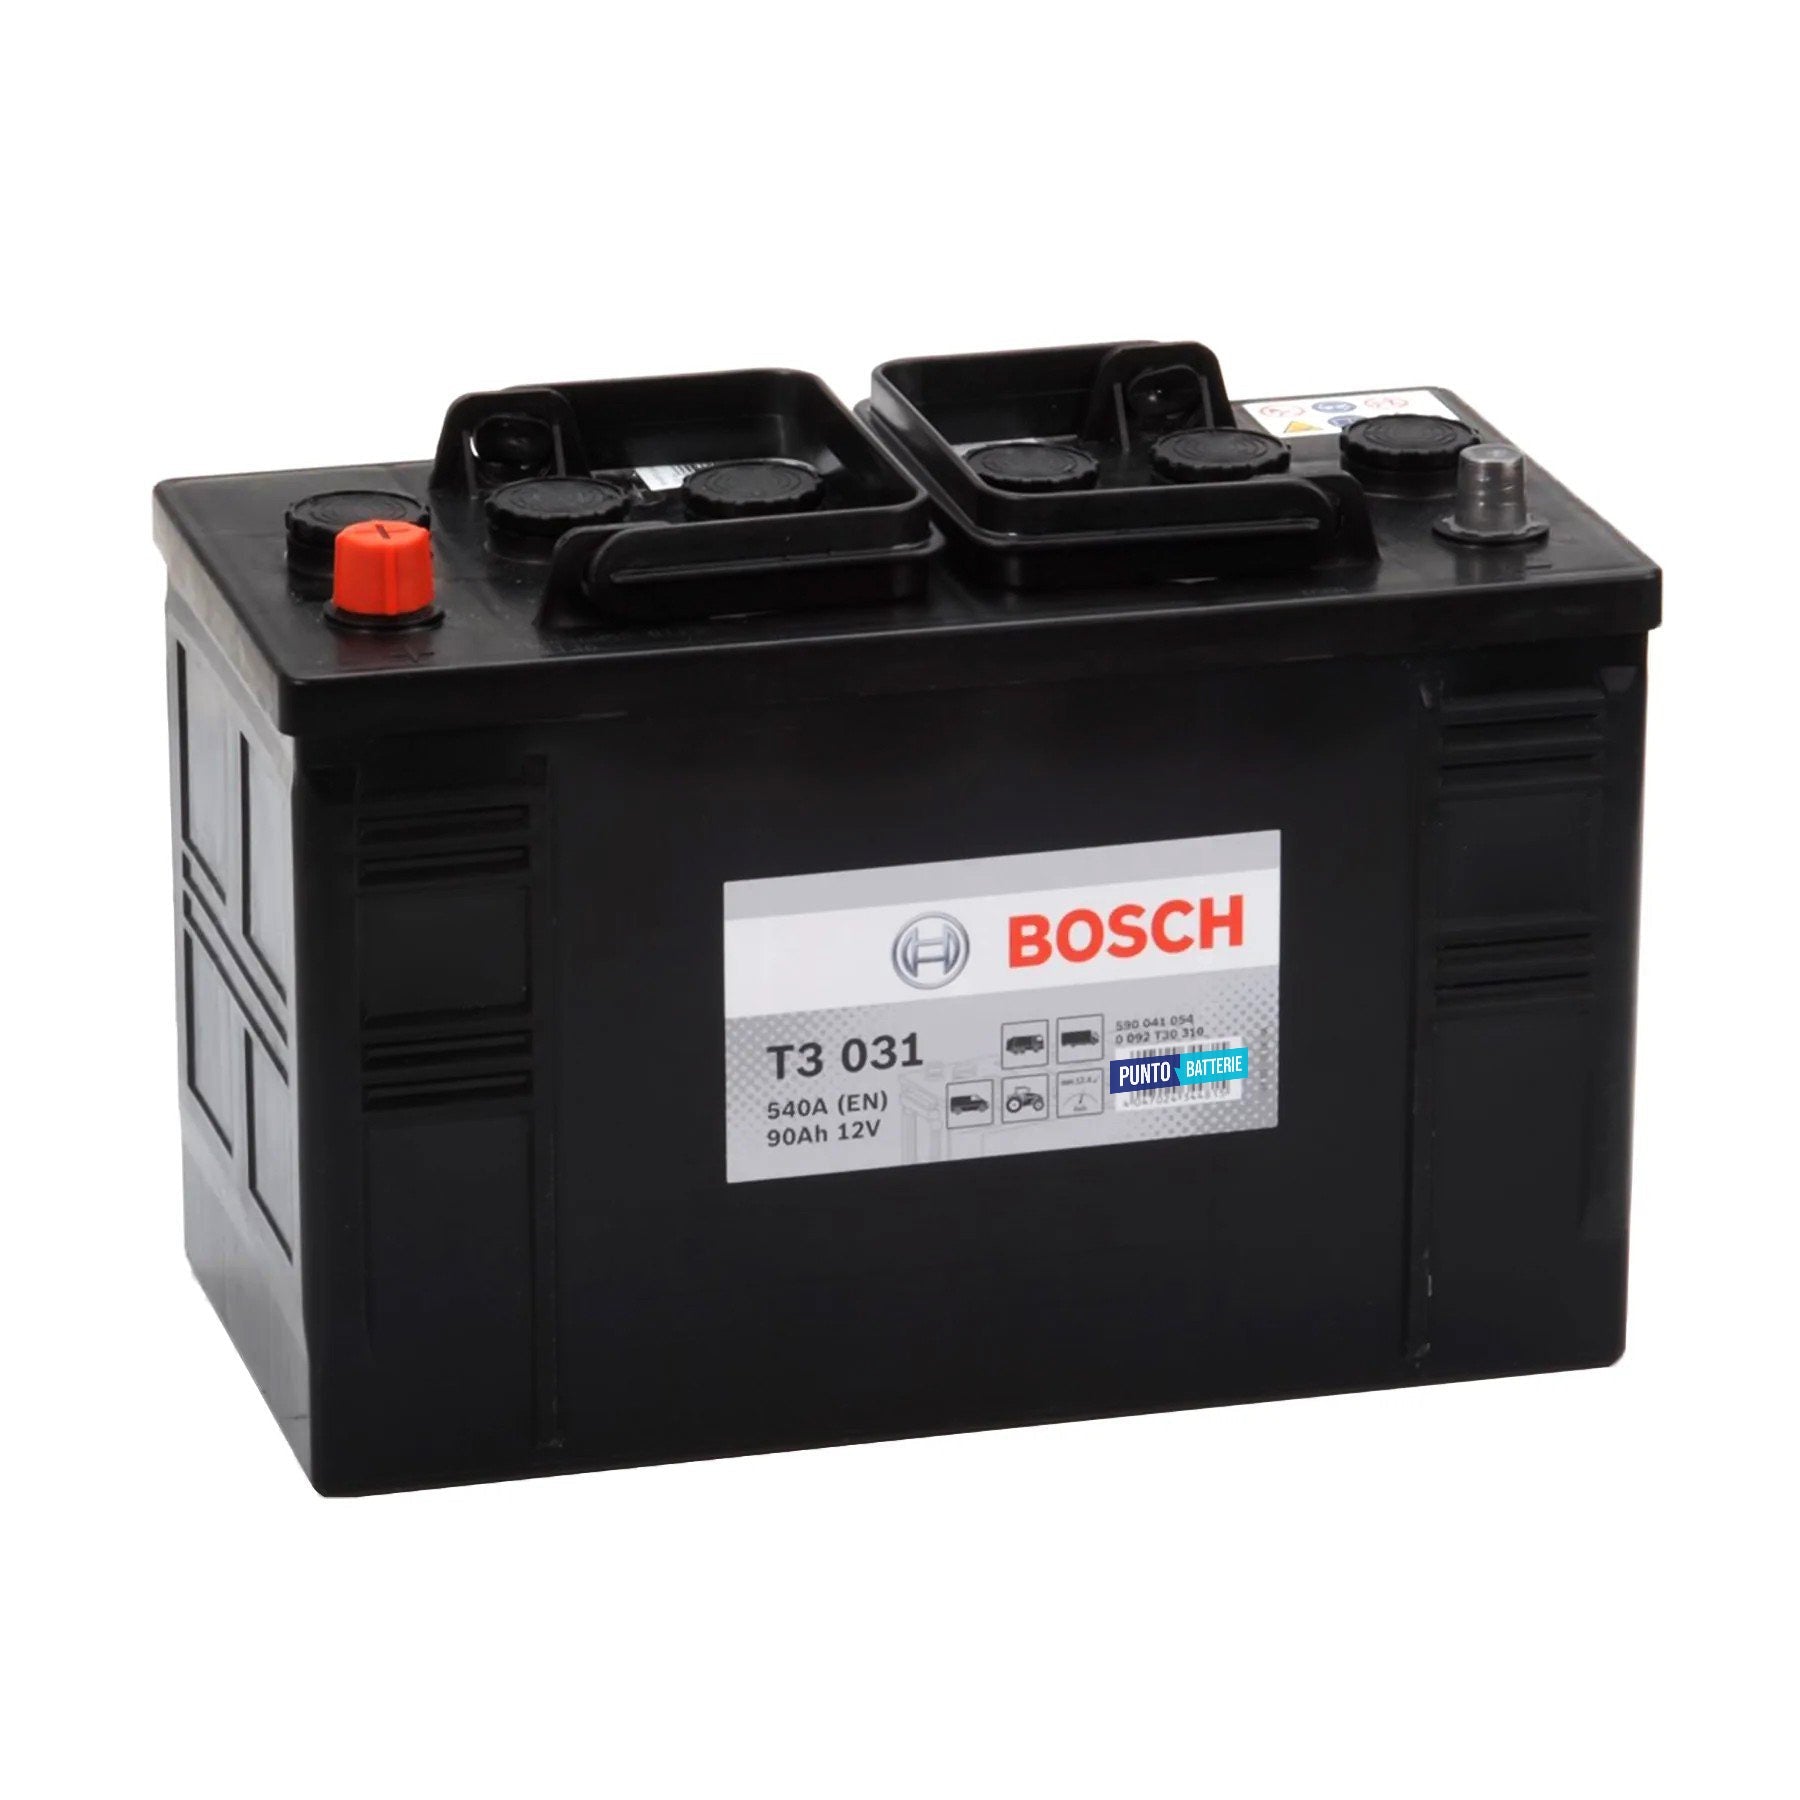 Batteria originale Bosch T3 T3031, dimensioni 346 x 173 x 236, polo positivo a sinistra, 12 volt, 90 amperora, 540 ampere. Batteria per camion e veicoli pesanti.